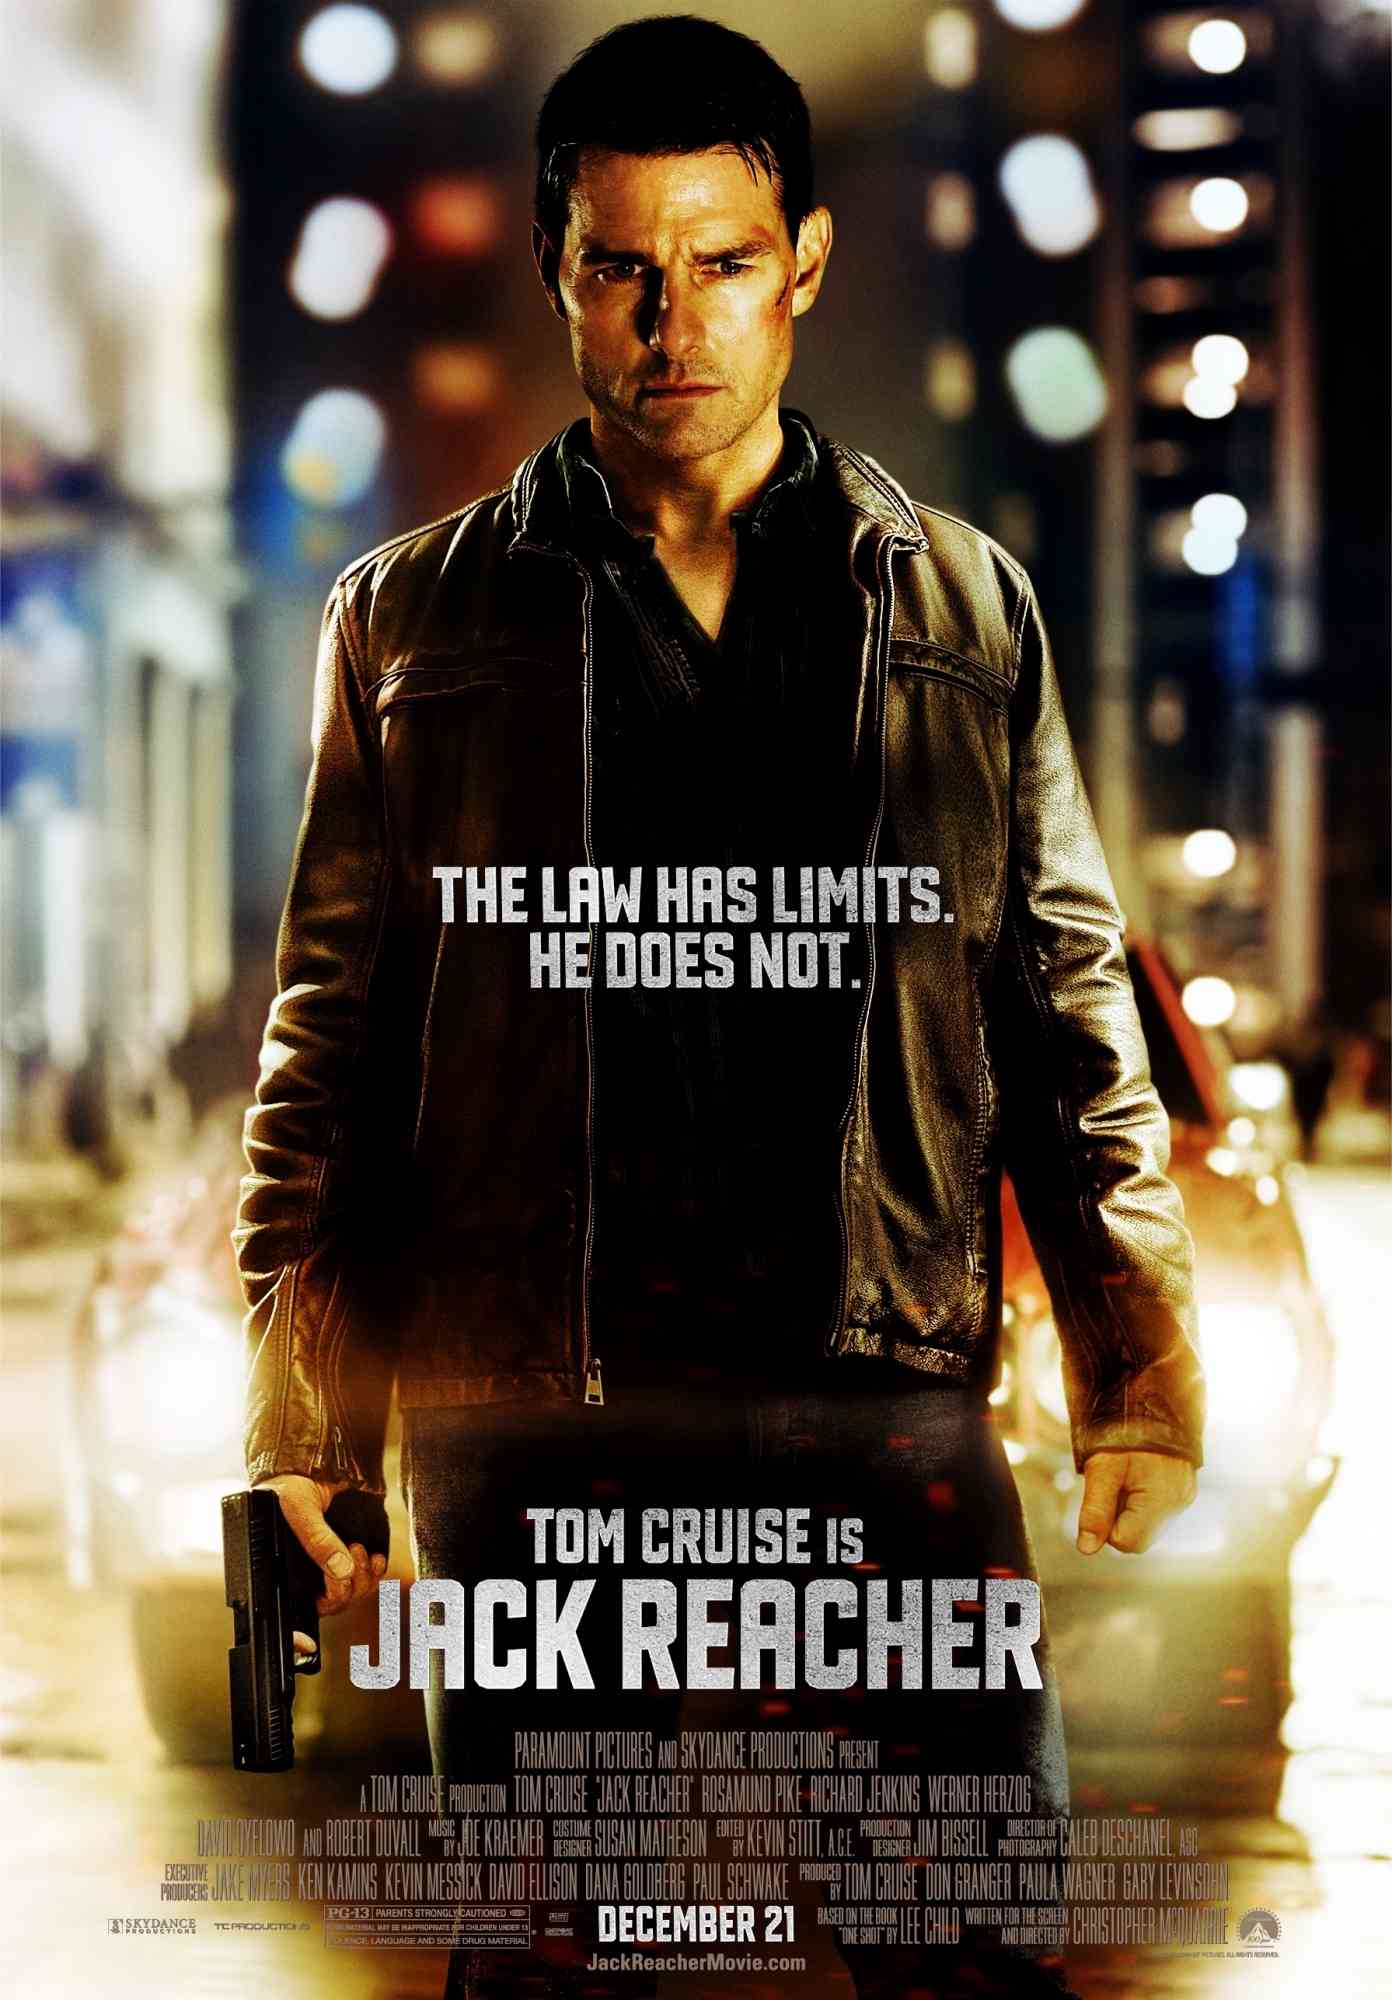 FULL MOVIE: Jack Reacher (2012) [Action]